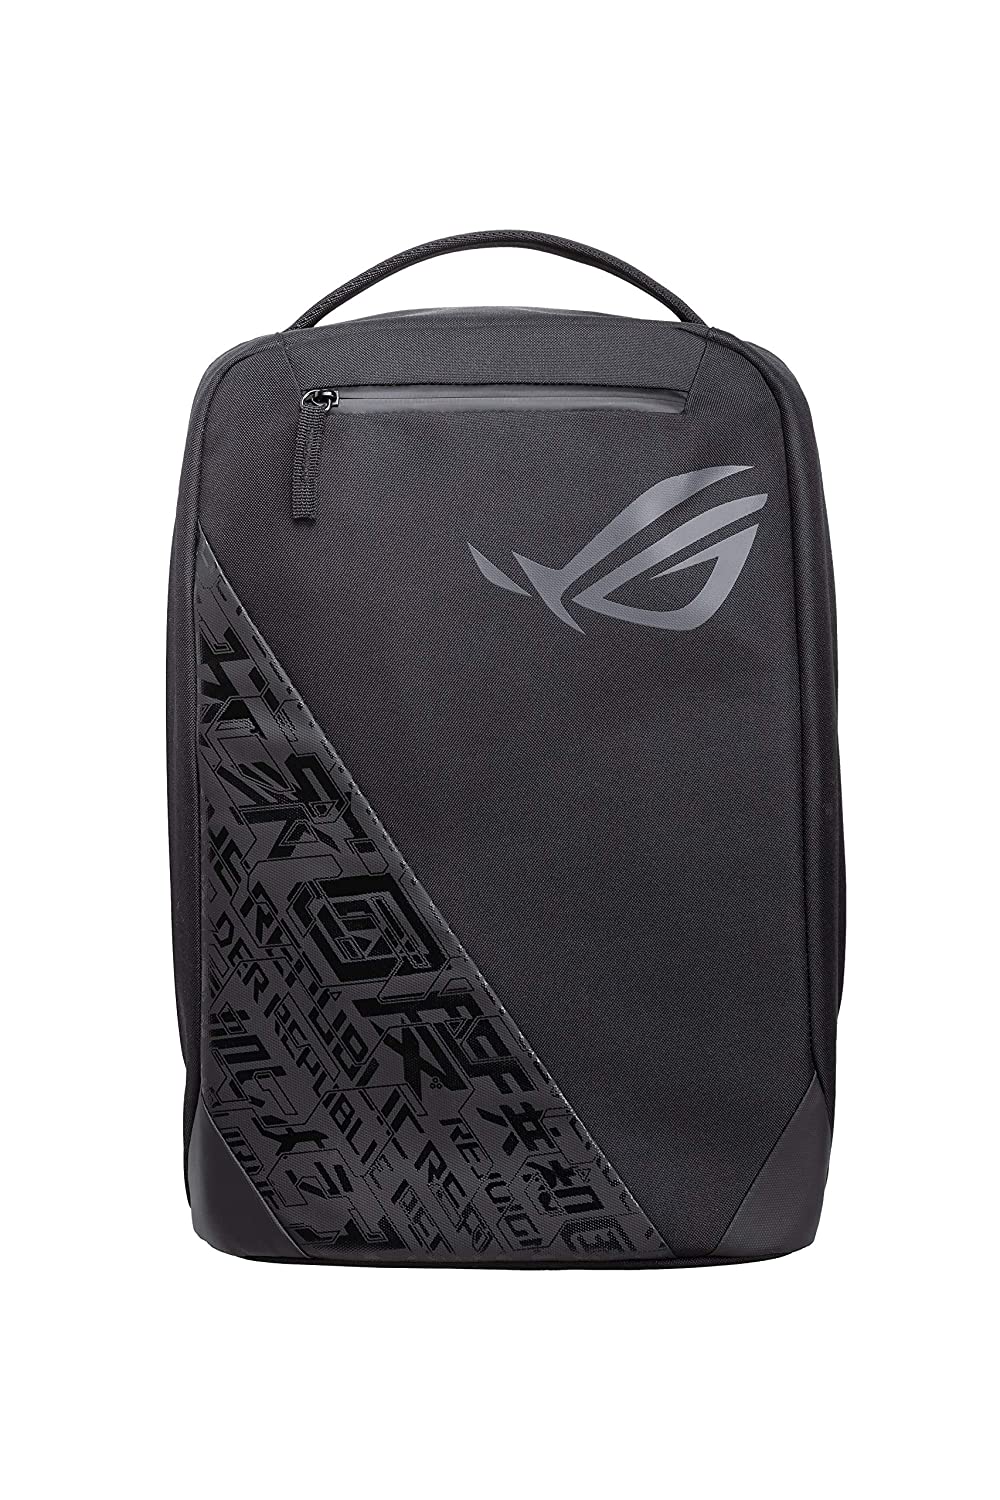 Shop Asus Rog Laptop Backpack Bag online | Lazada.com.ph-saigonsouth.com.vn